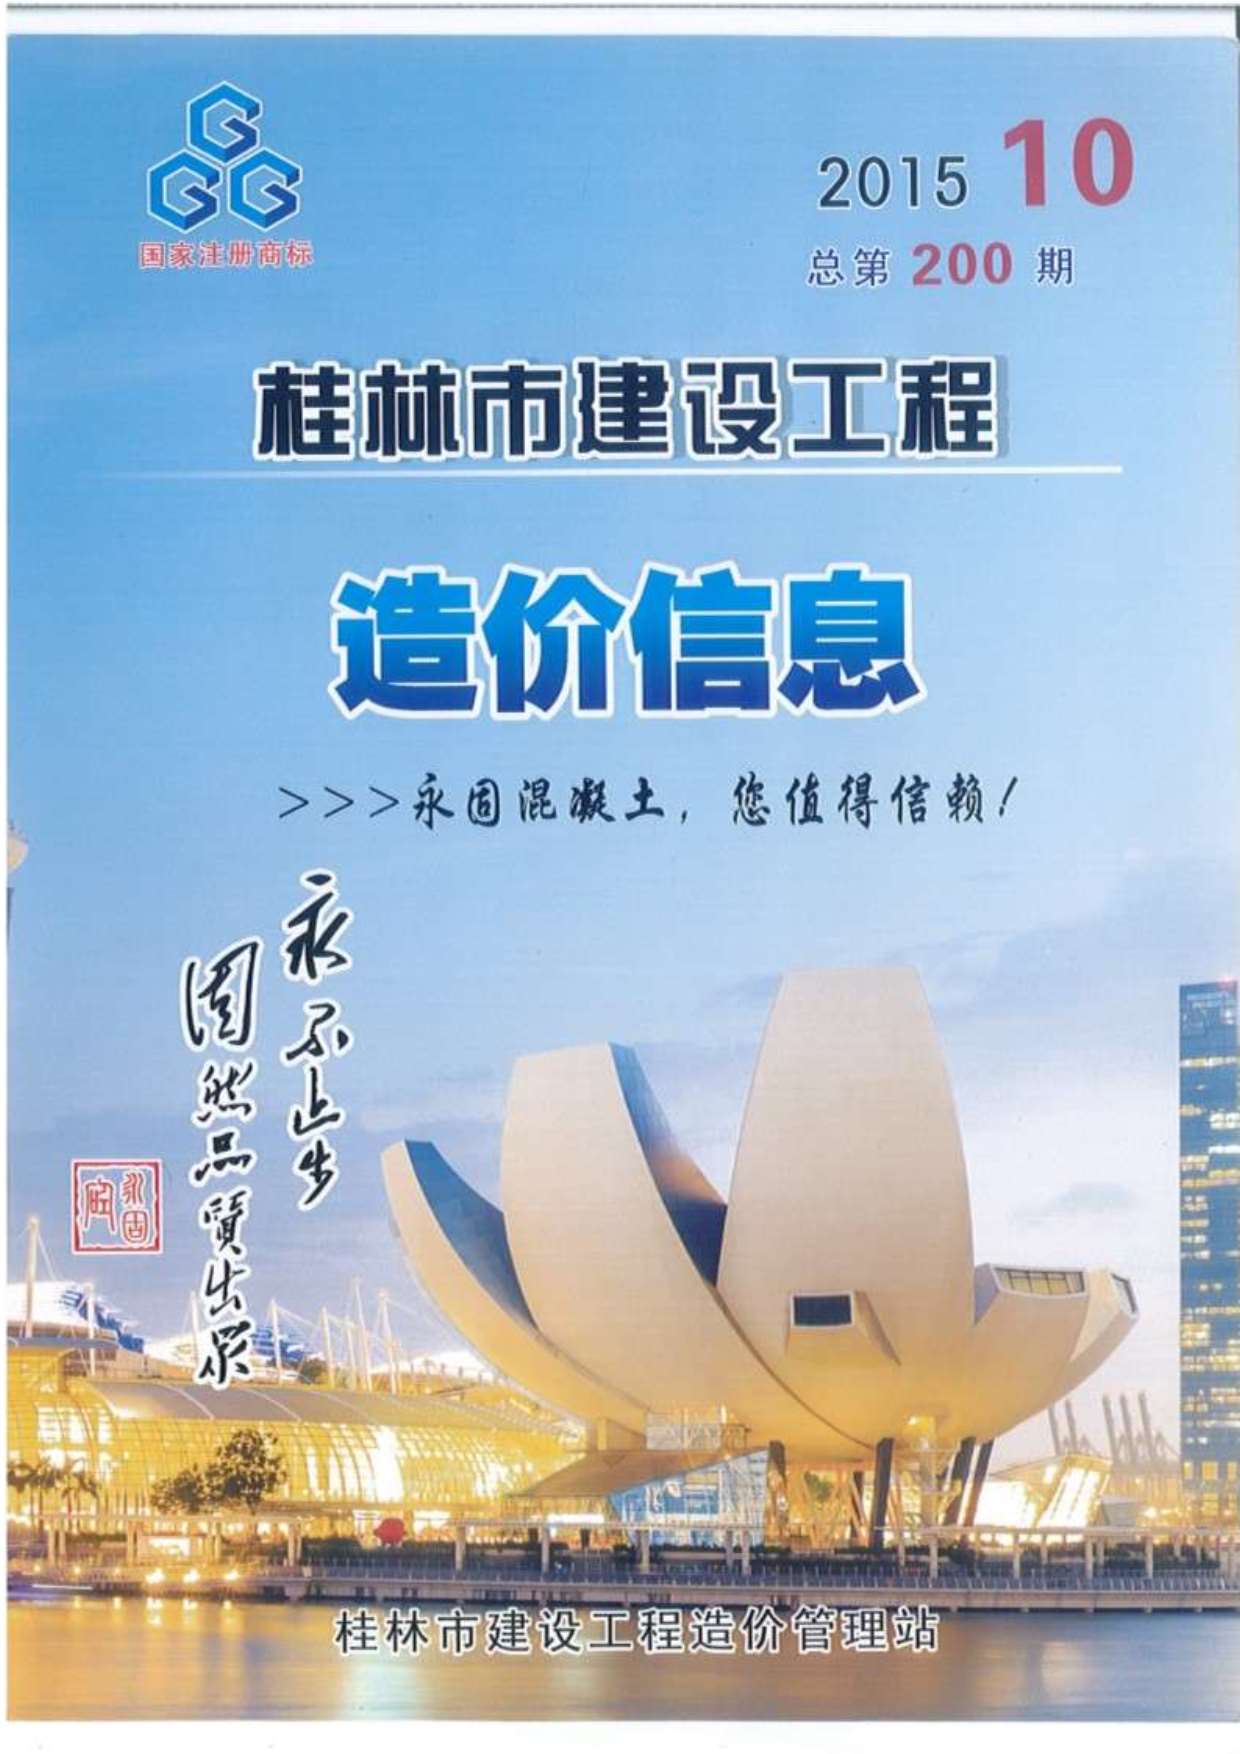 桂林市2015年10月建设工程造价信息